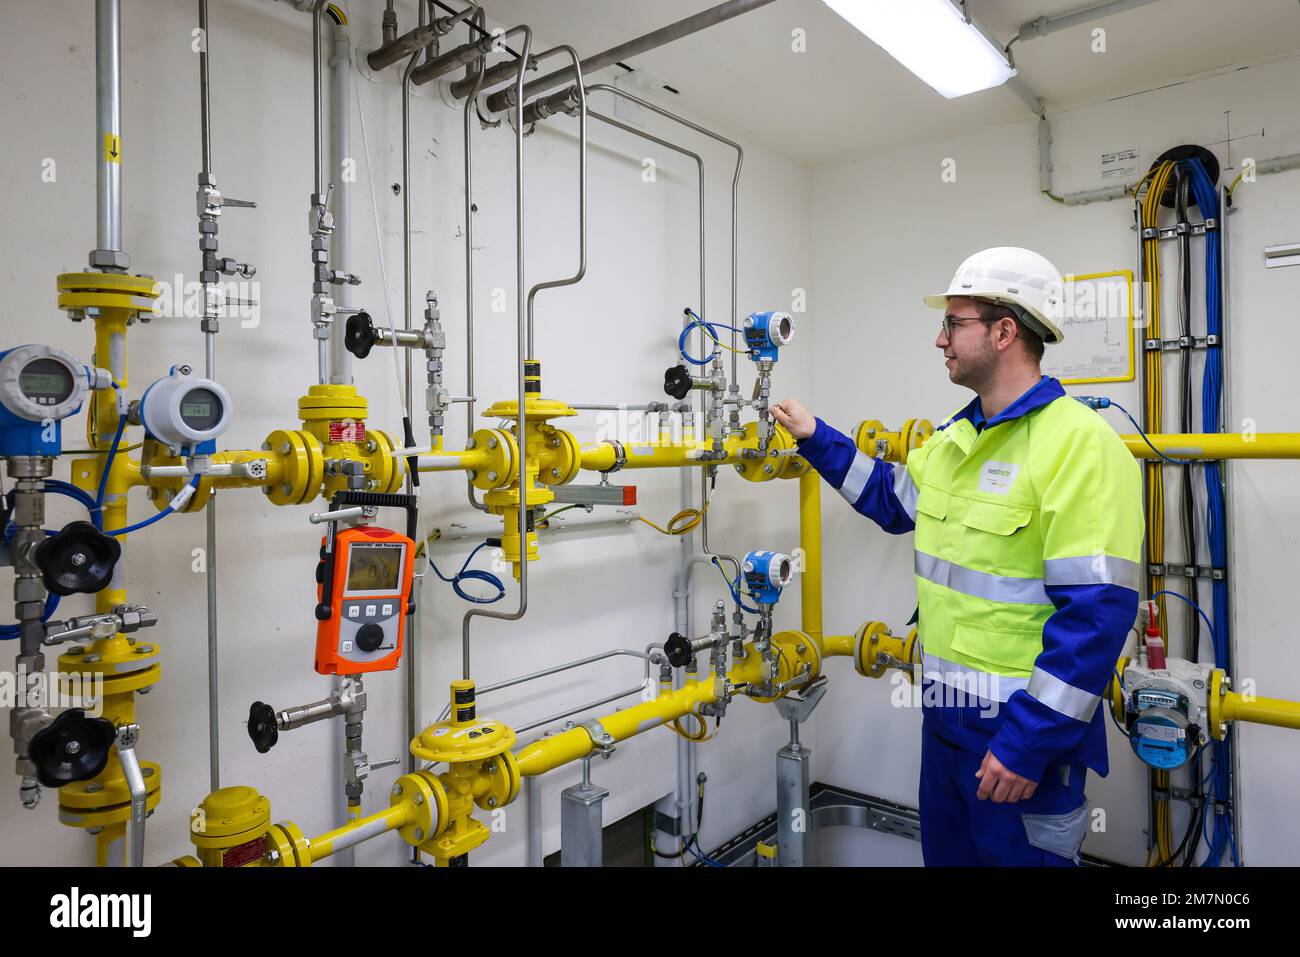 Holzwickede, Nordrhein-Westfalen, Deutschland - Erdgasnetz für reinen Wasserstoff, Wasserstoffprojekt H2HoWi, ein Westnetz-Mitarbeiter betreibt das odoriz Stockfoto